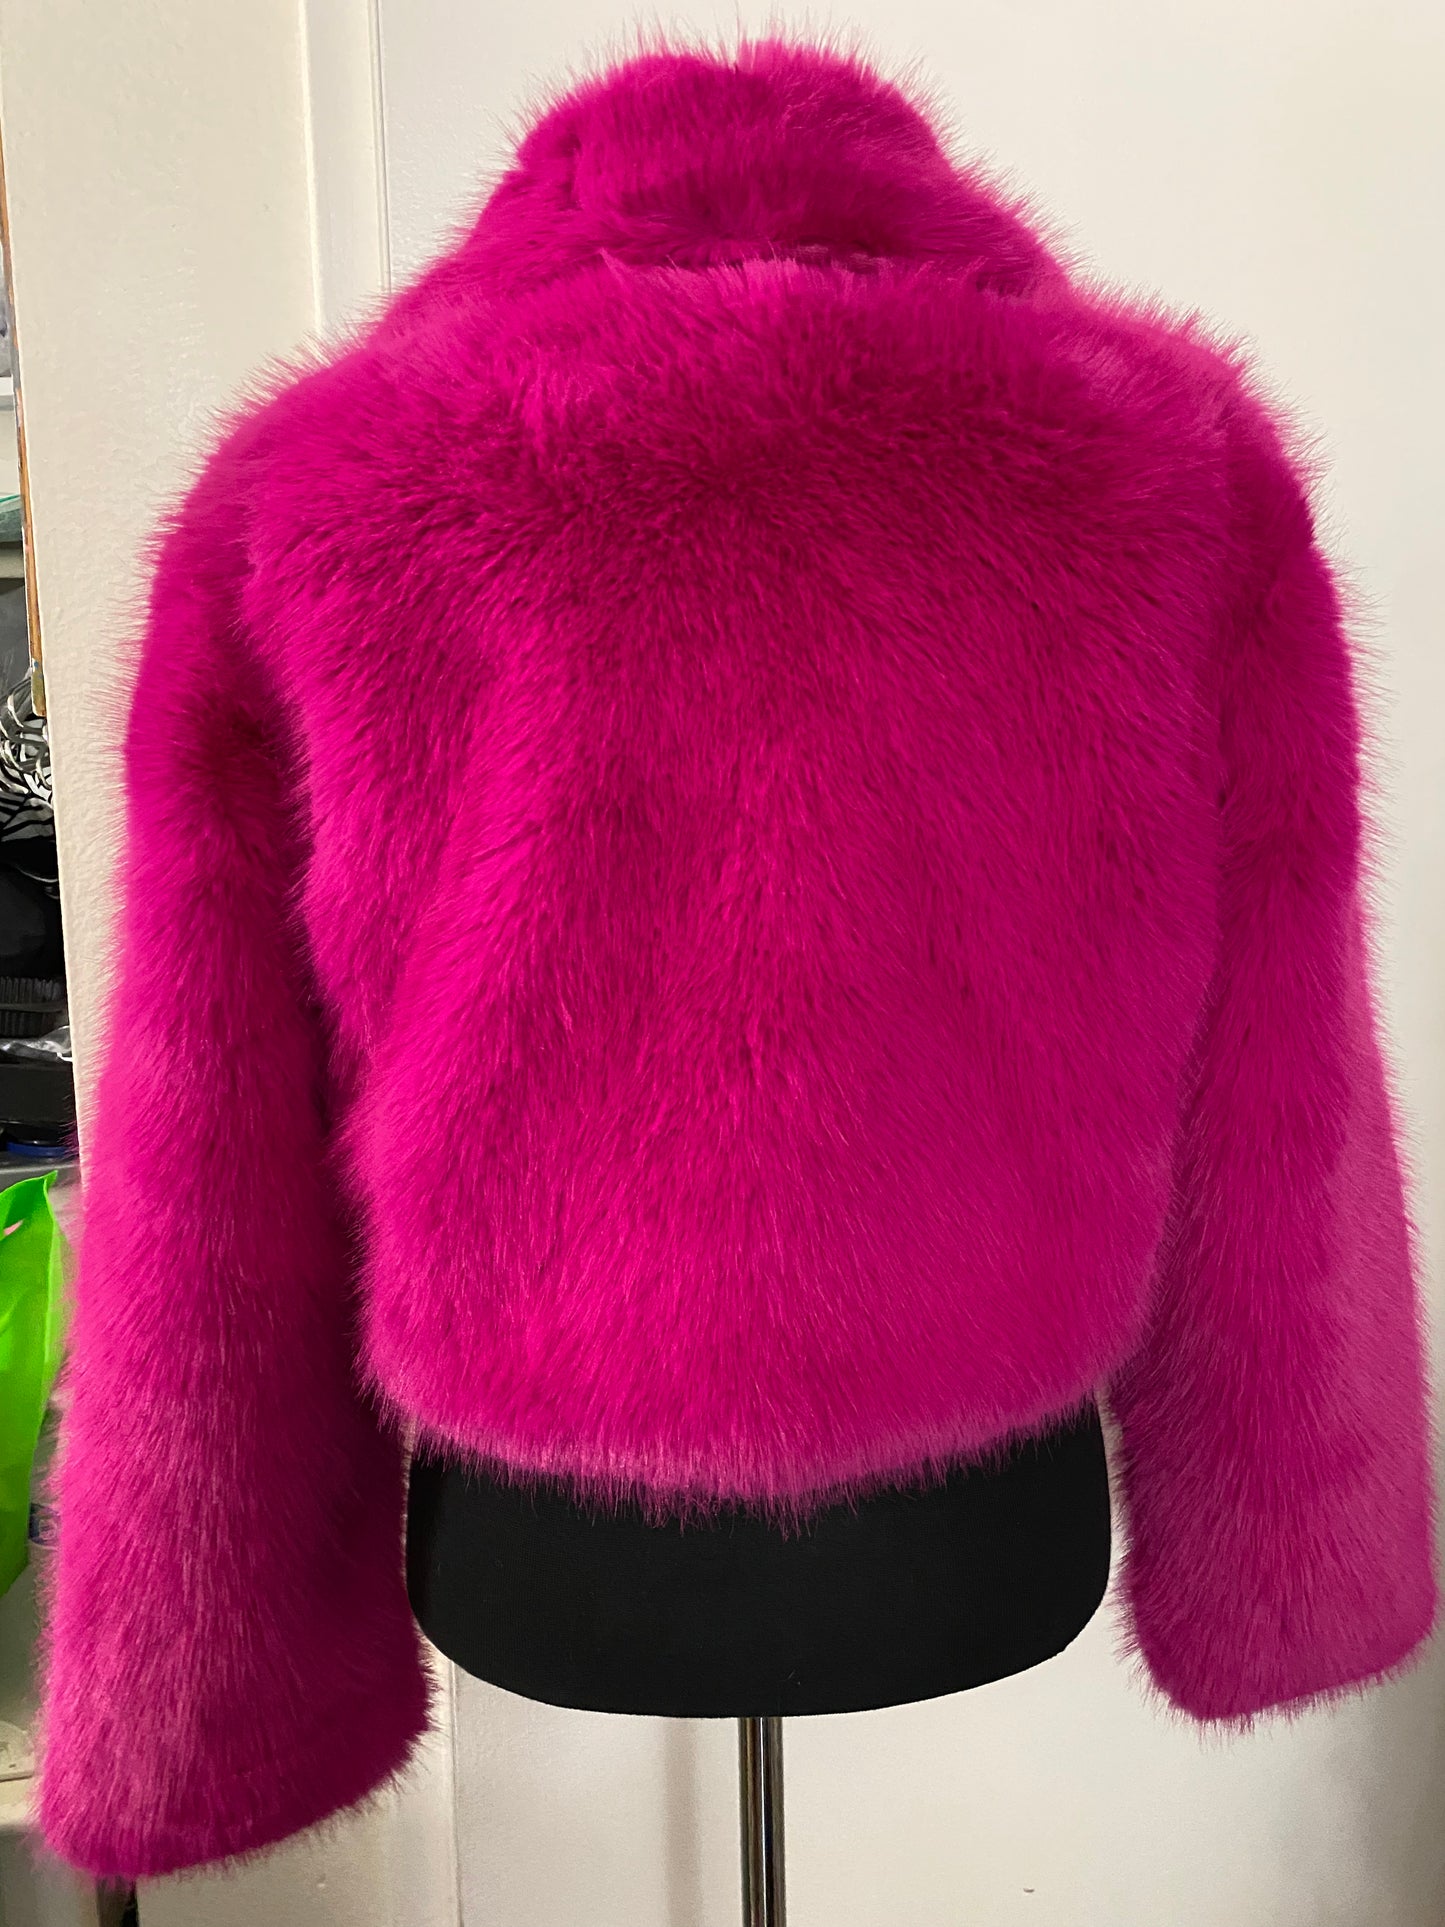 Neon pink fuzzy faux fur coat